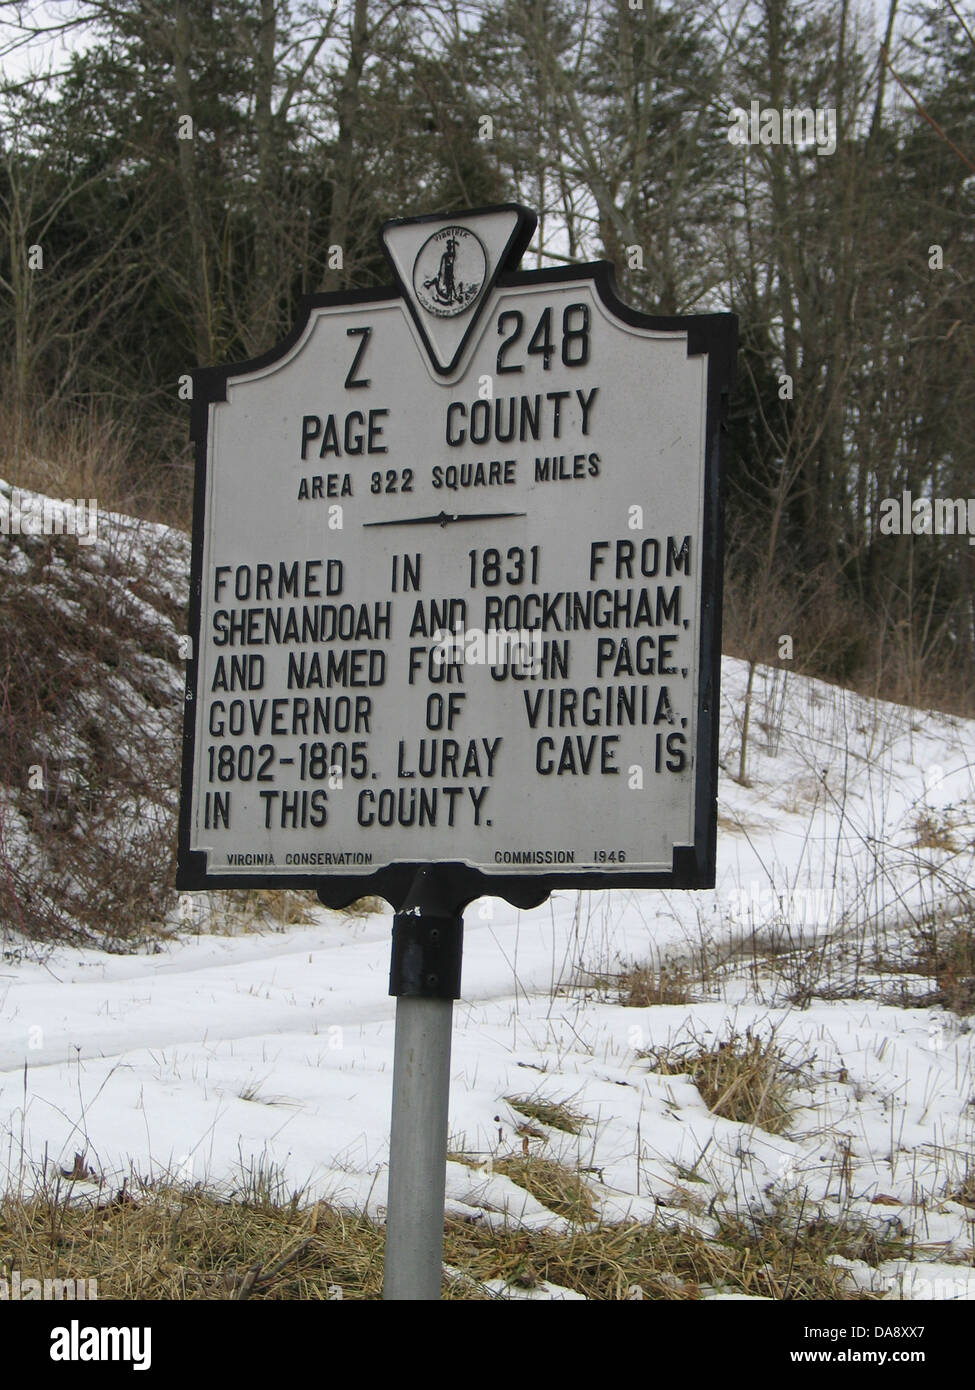 PAGE COMTÉ Salon 322 milles carrés formé en 1831 à partir de la ville de Shenandoah et Rockingham, et nommé pour John Page, gouverneur de Virginie, 1802-1805. Luray Cave est dans ce comté. Virginia Conservation Commission, 1946 Banque D'Images